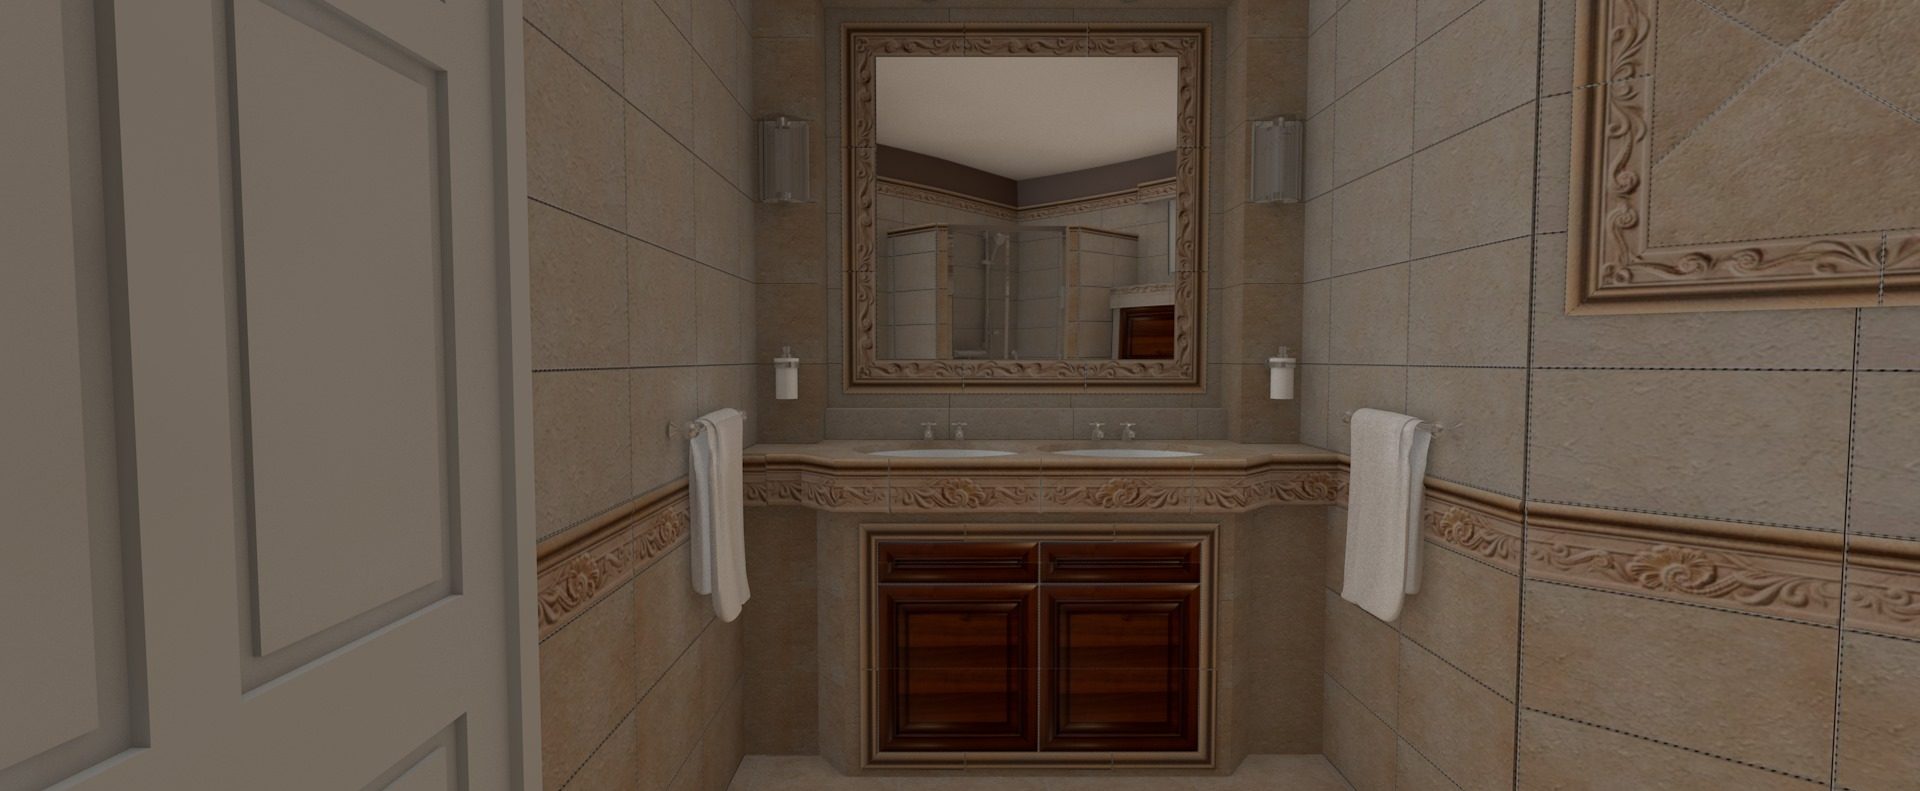 Egyedi tervezésű fürdőszoba